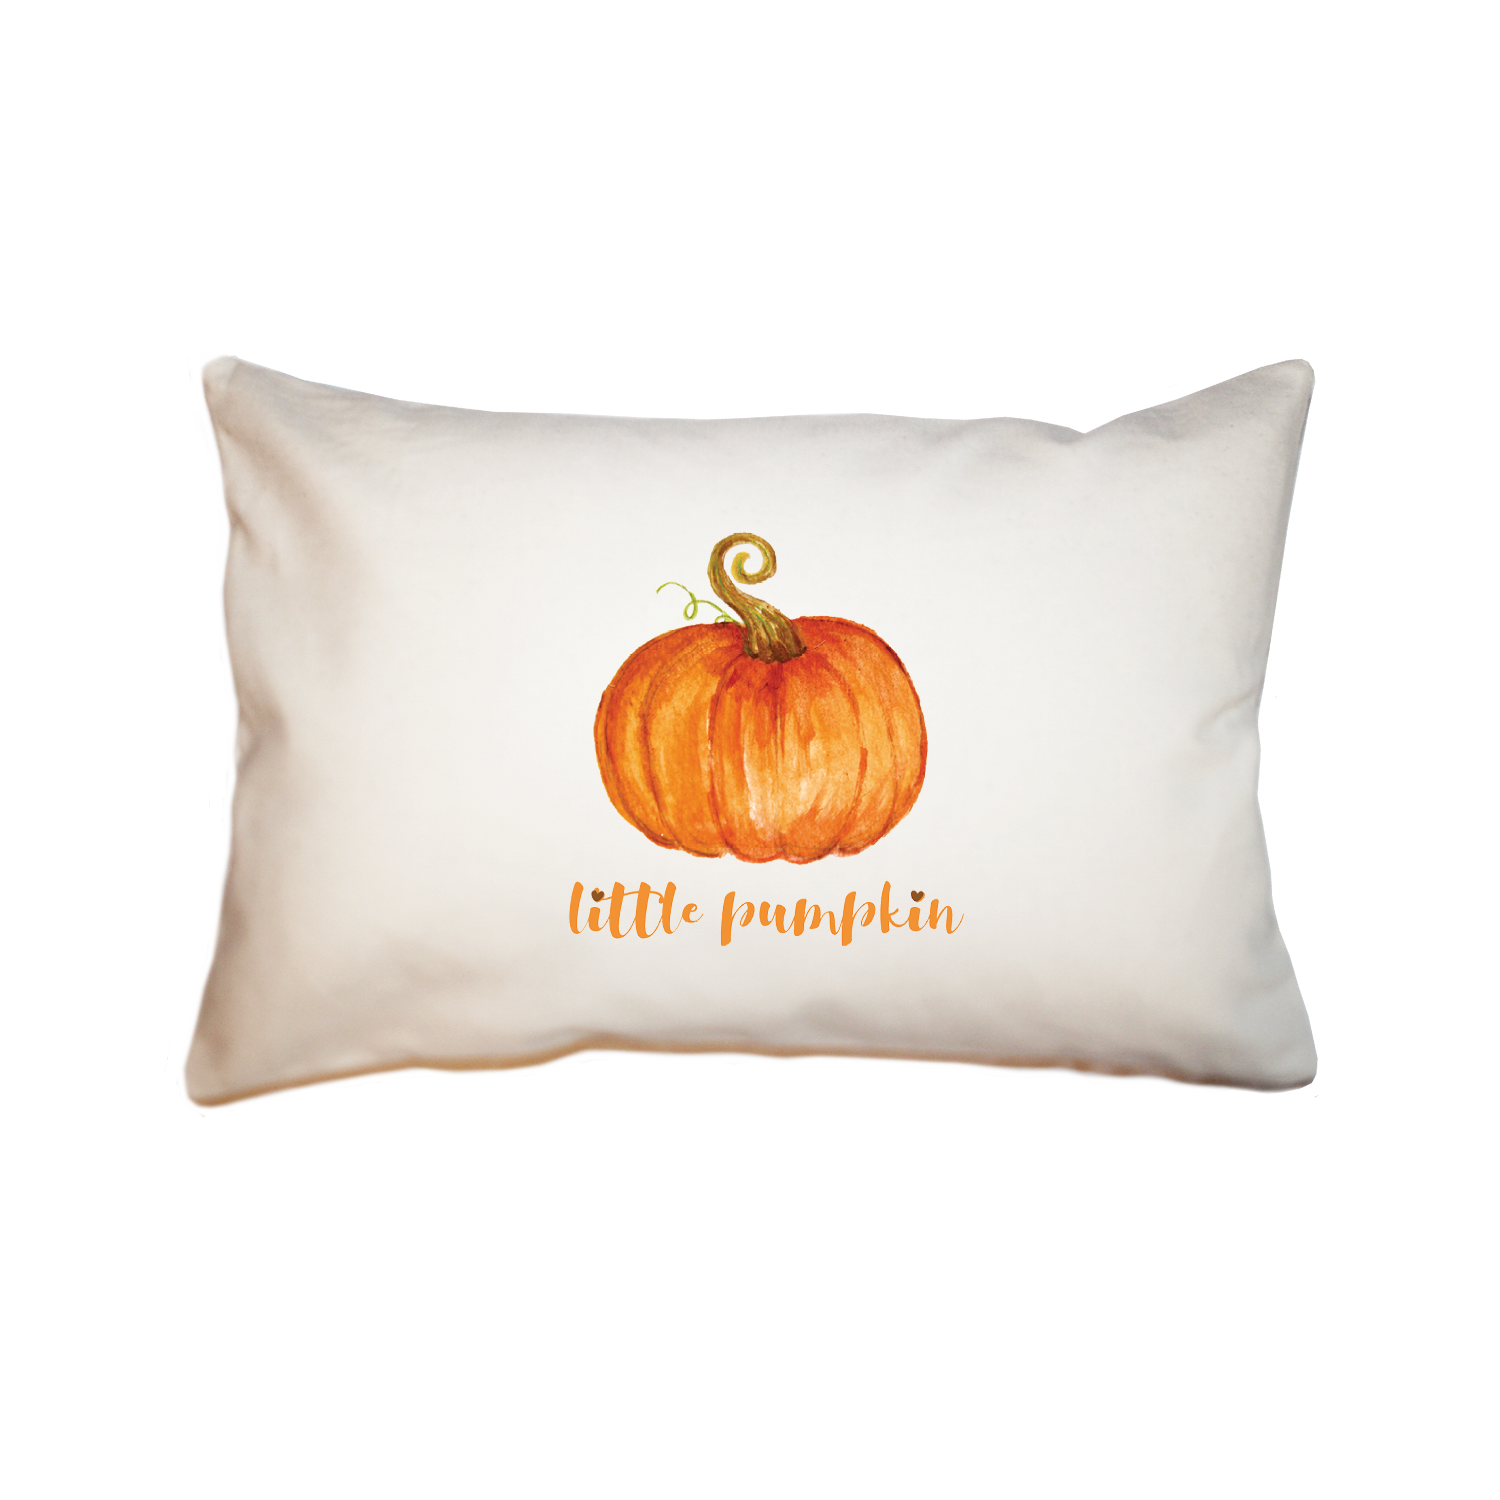 little pumpkin large rectangle pillow